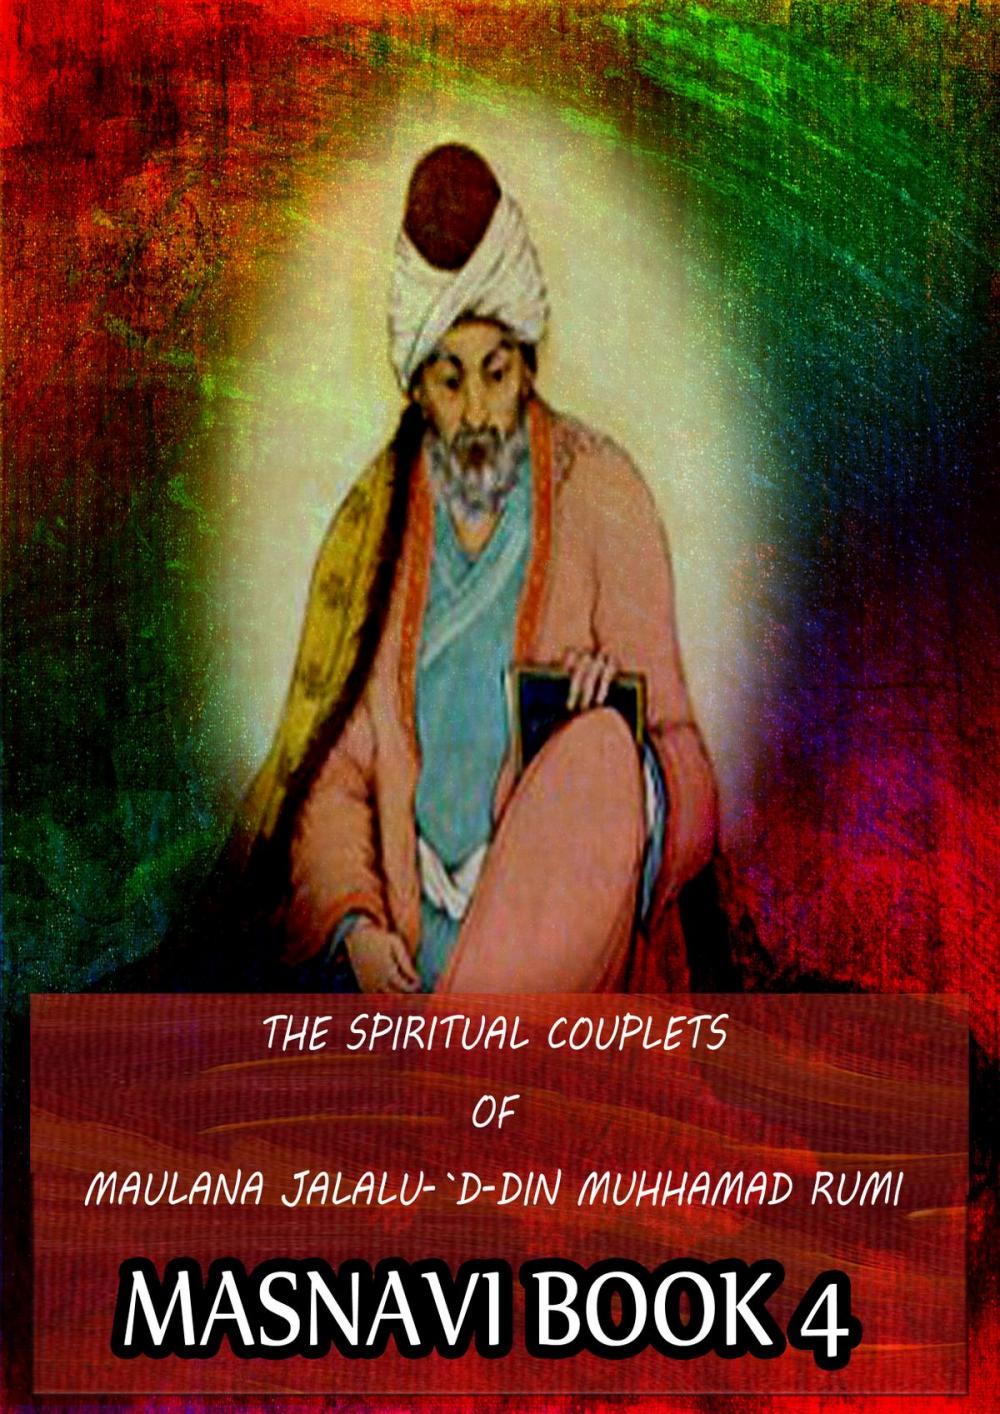 Big bigCover of THE SPIRITUAL COUPLETS OF MAULANA JALALU-'D-DlN MUHAMMAD RUMI Masnavi Book 4